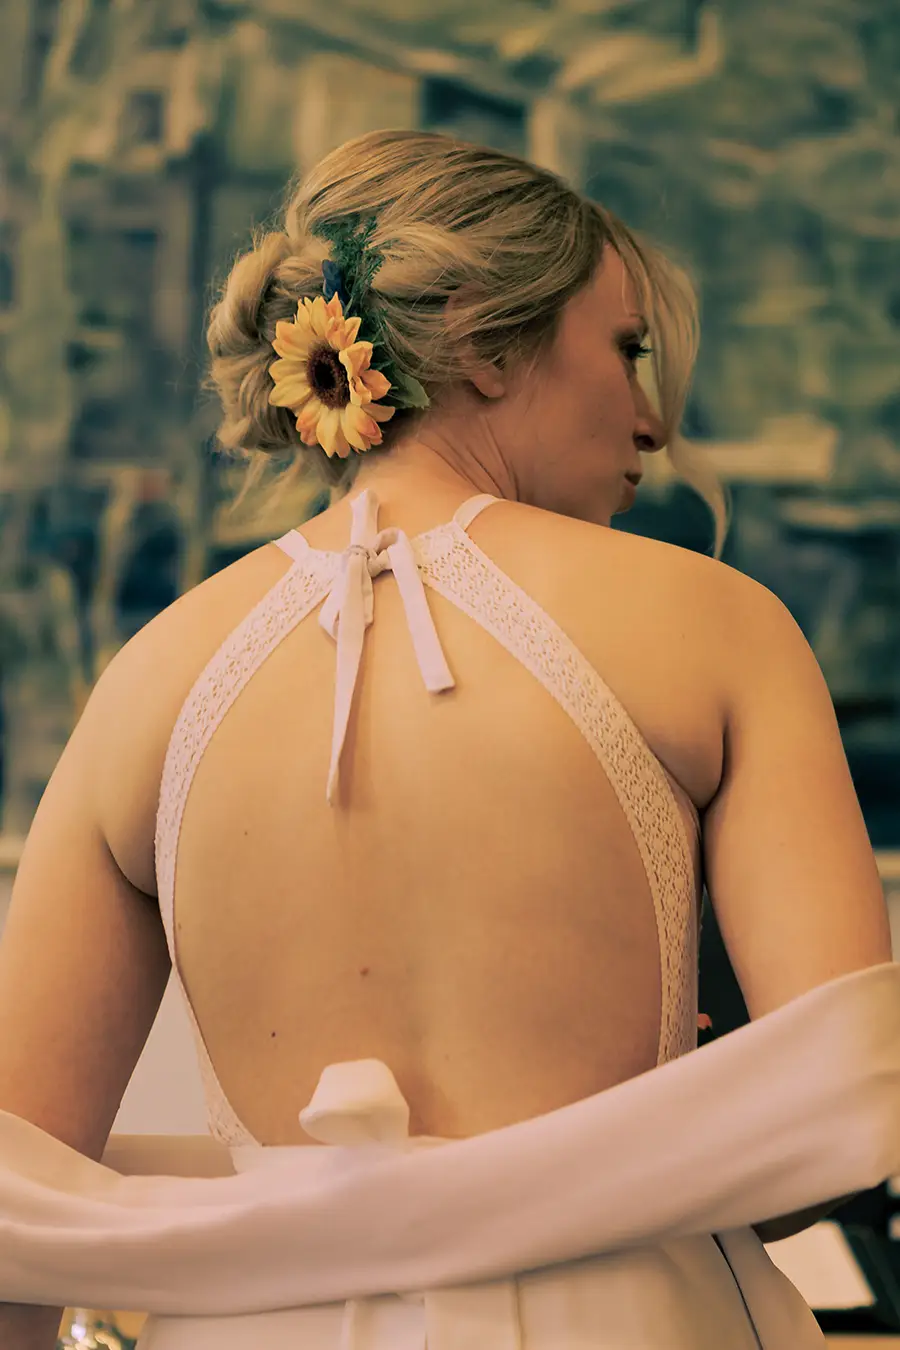 Hochkantaufnahme von der Braut von hinten im Standesamt, sodass man den hinteren Teil ihres Hochzeitskleides sieht.